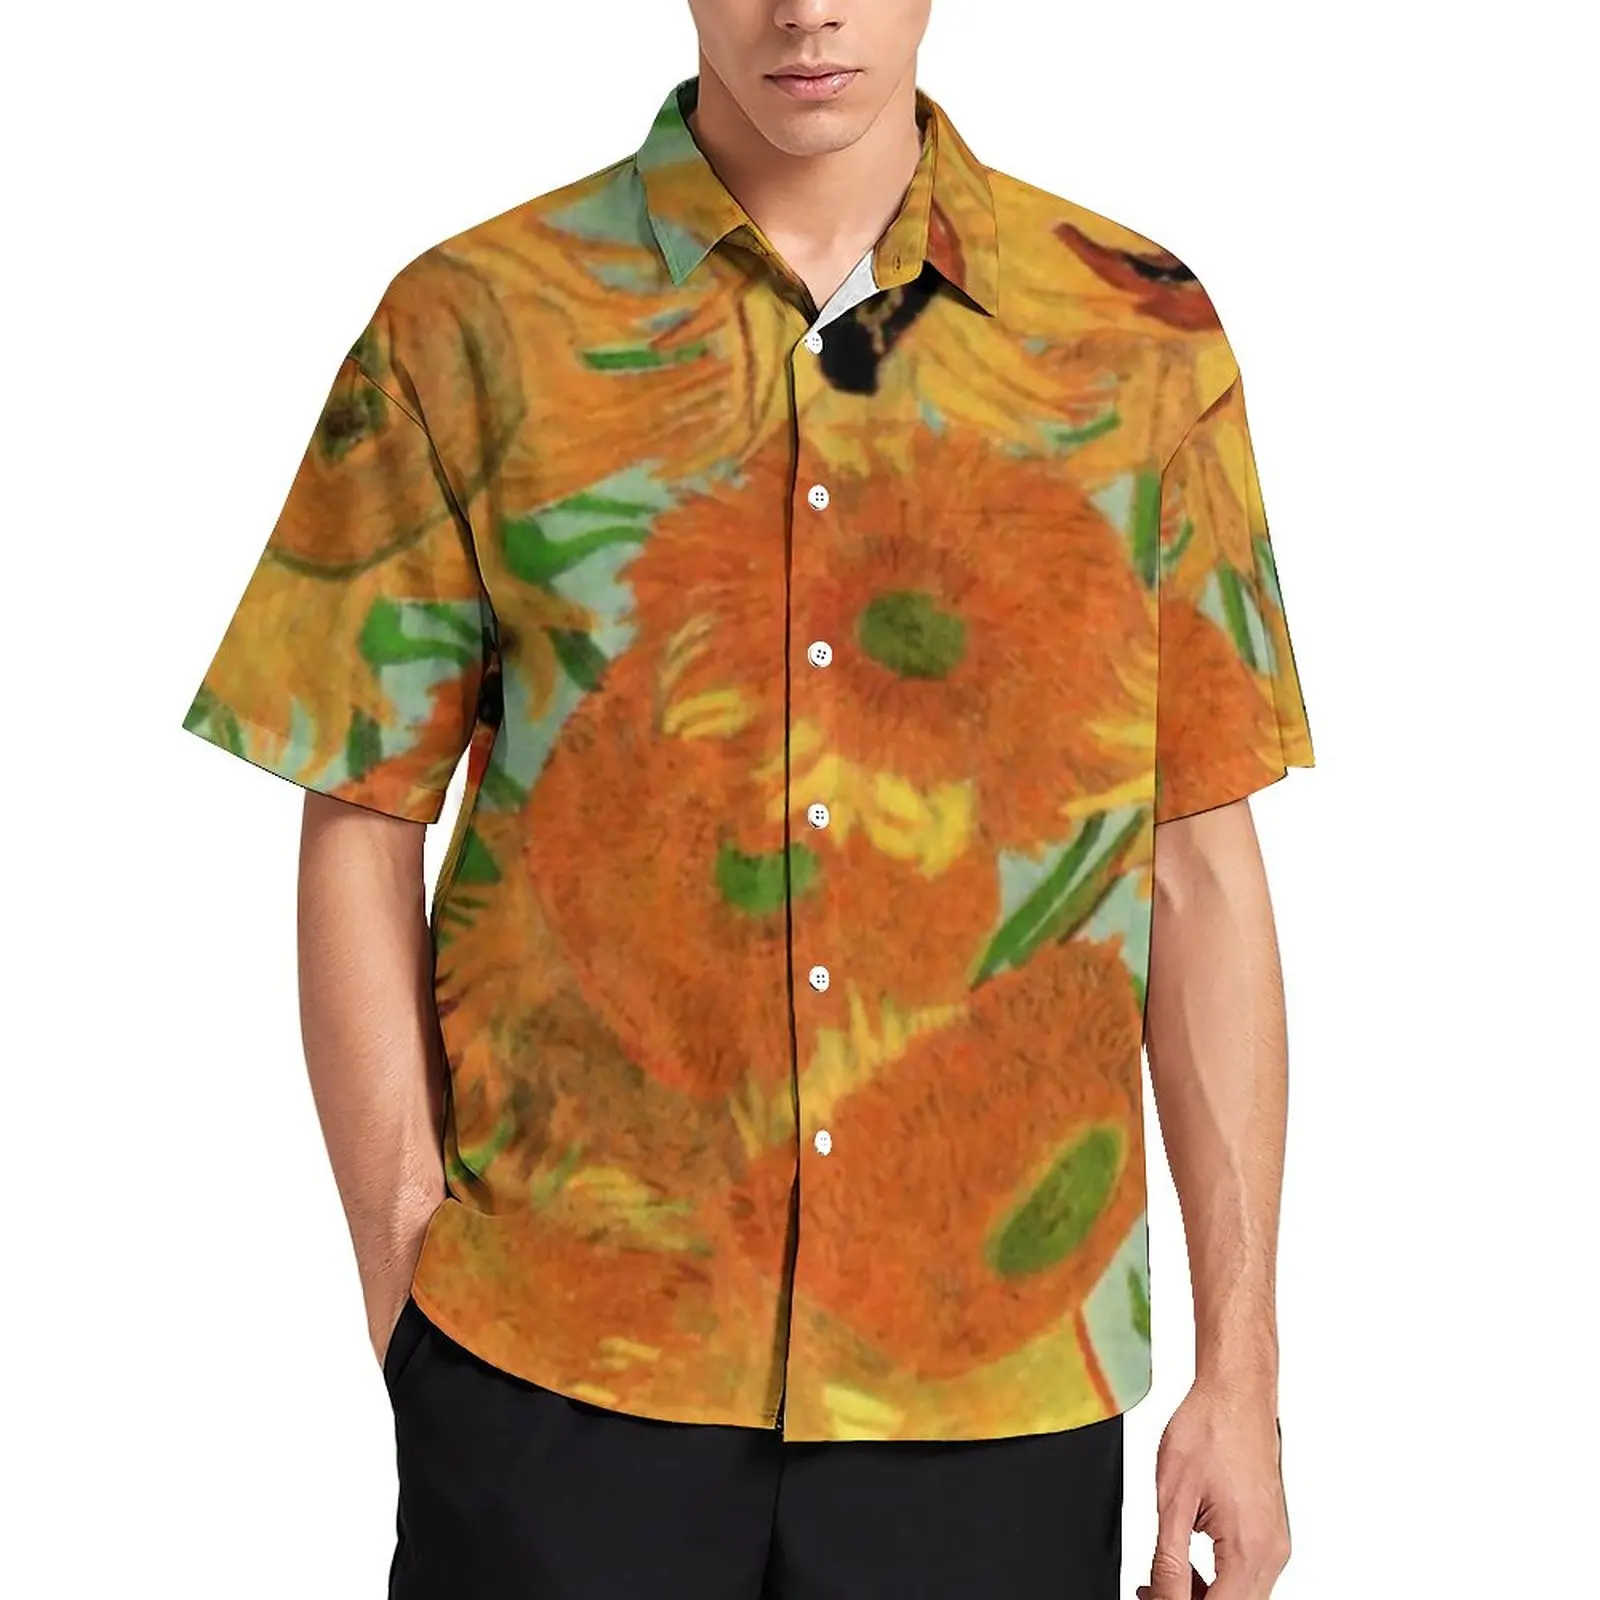 

Рубашка для отпуска с вазой с подсолнухом от Винсента Ван Гога повседневные рубашки Гавайские забавные блузки большого размера с коротким рукавом